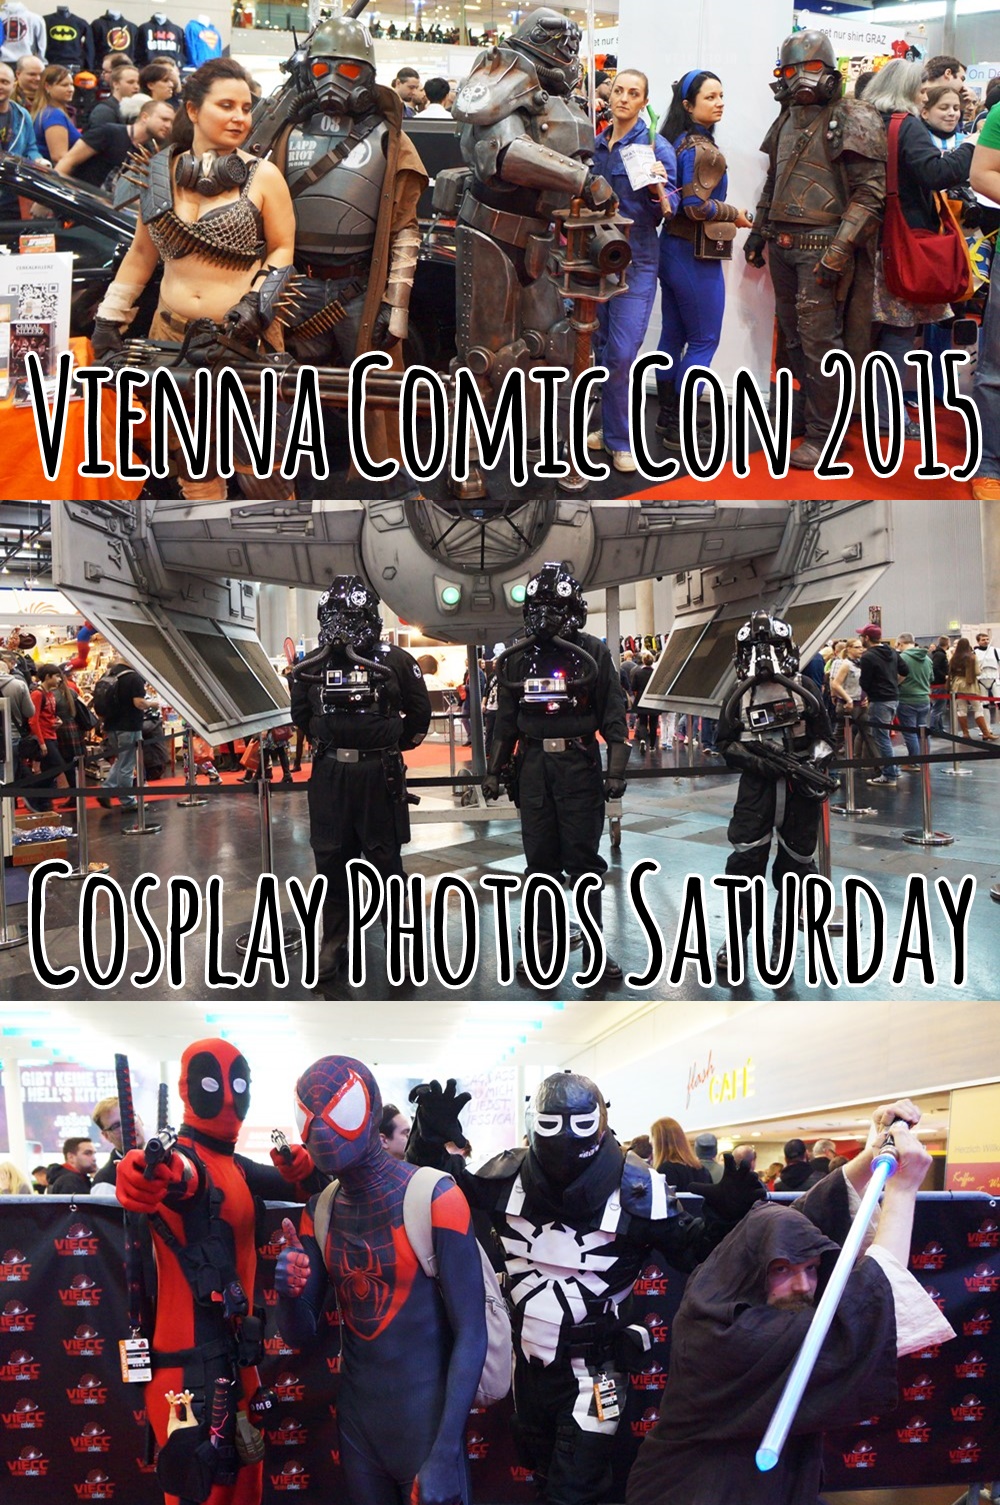 Vienna Comic Con - Cosplay Photos Saturday